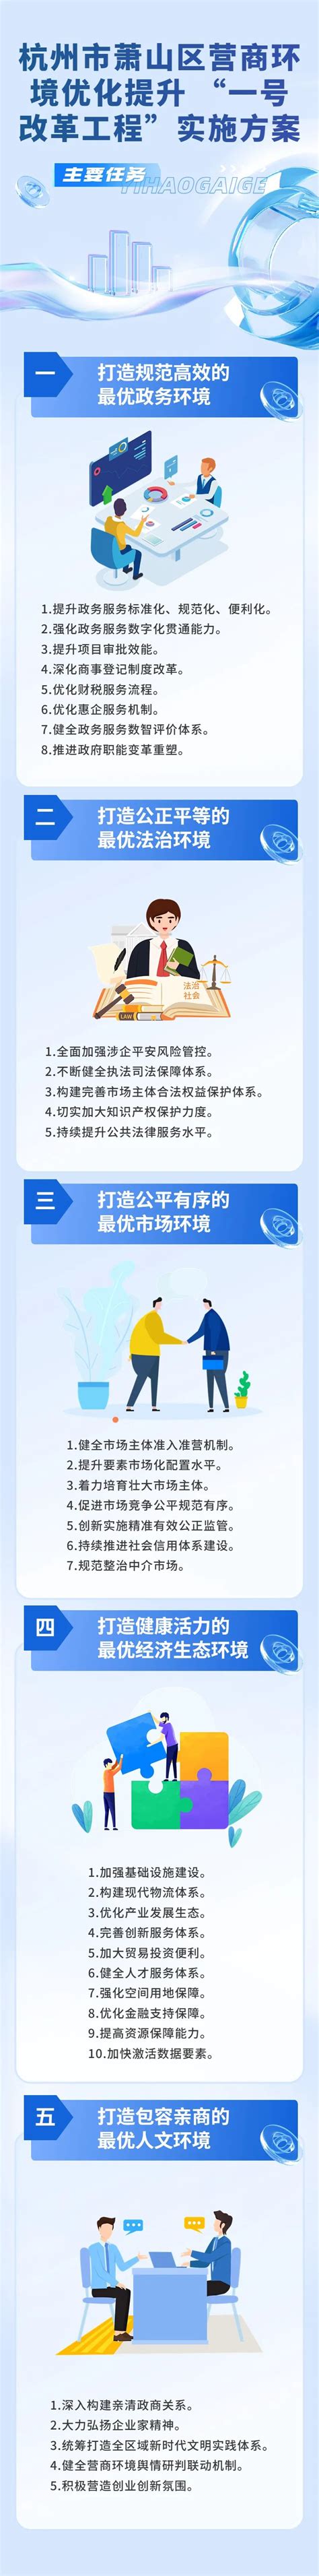 杭州萧山区优化网站推广